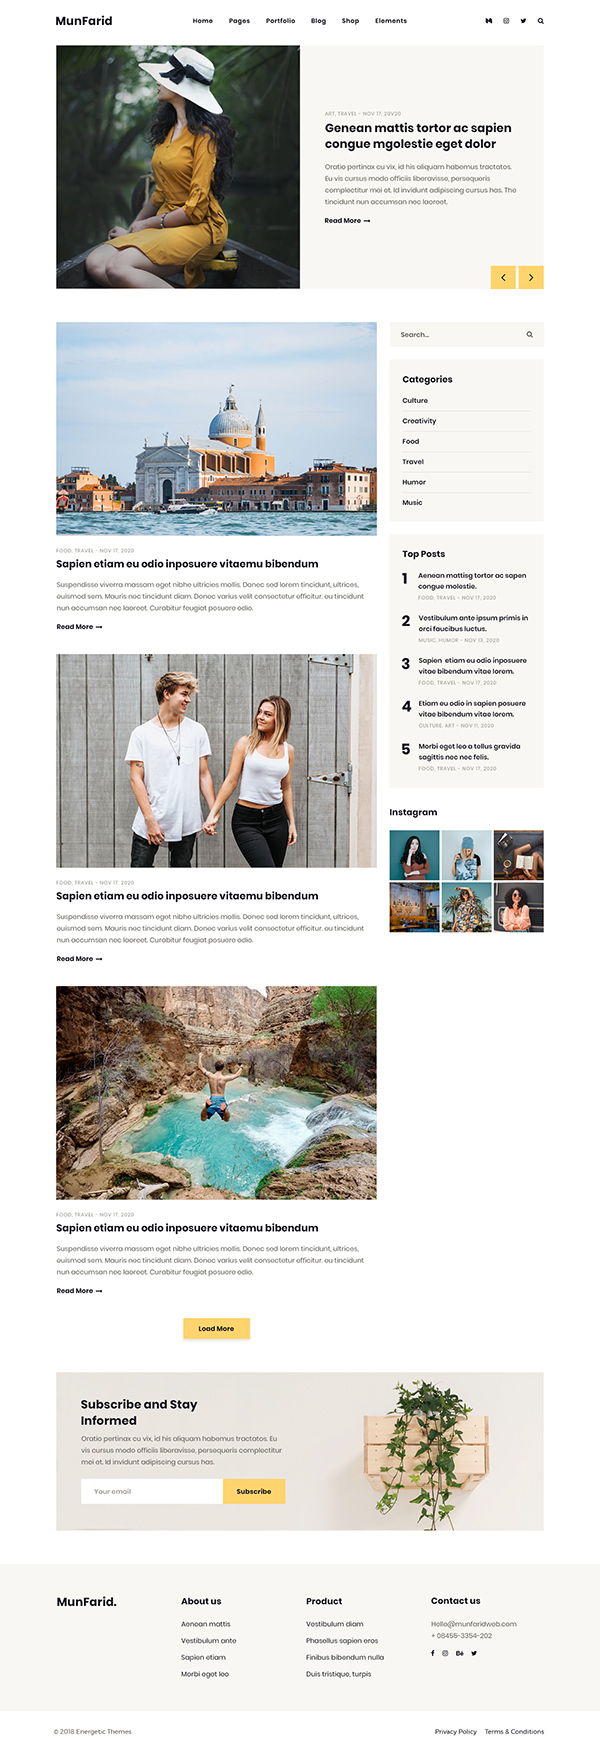 Munfarid – A WordPress Theme For Blog & Shop